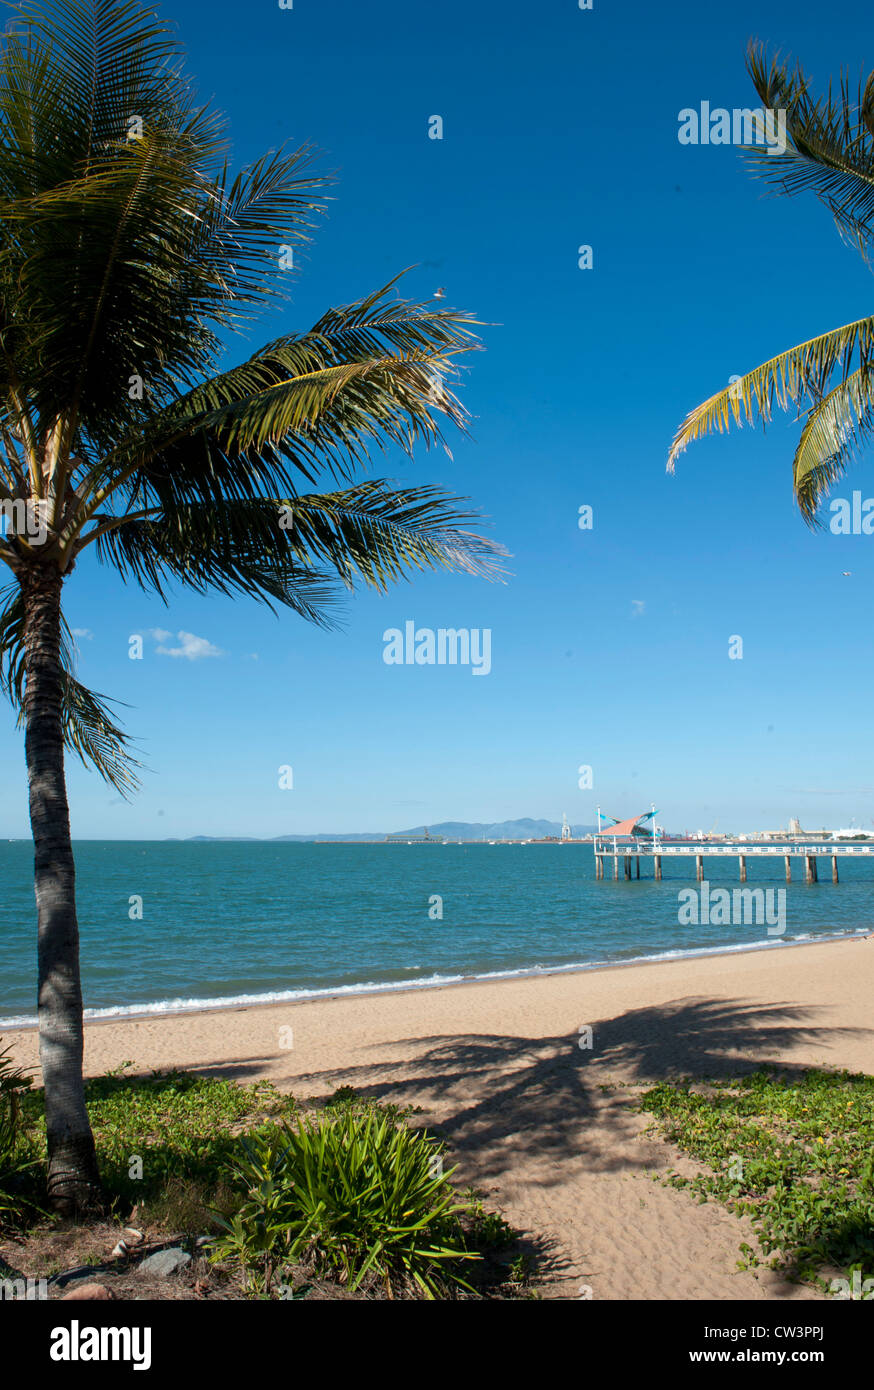 Vue sur la plage principale de Townsville Le Strand avec des baies de sable, des palmiers, et jetée de pêche, Tropical North Queensland, Australie Banque D'Images